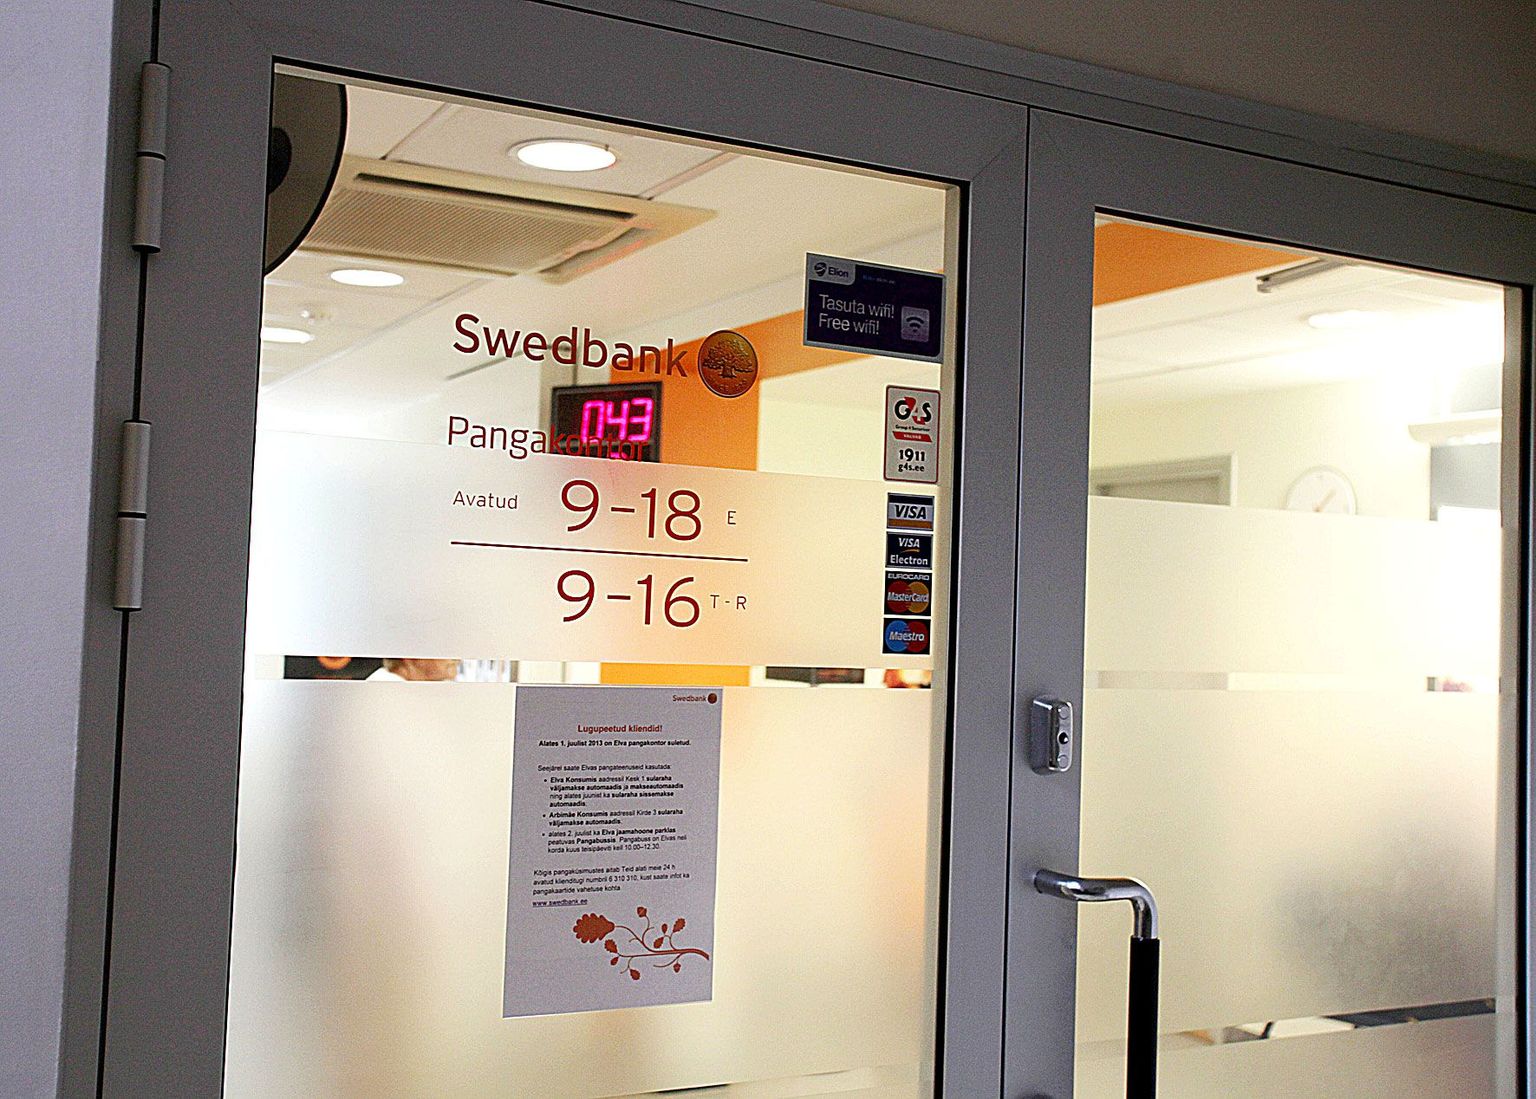 Silt Swedbanki Elva raekoja esimesel korrusel asuva kontori uksel teatab sulgemisest 1. juulil. Edaspidi teenindab linlasi kord kuus paariks tunniks Elvas peatuv pangabuss.